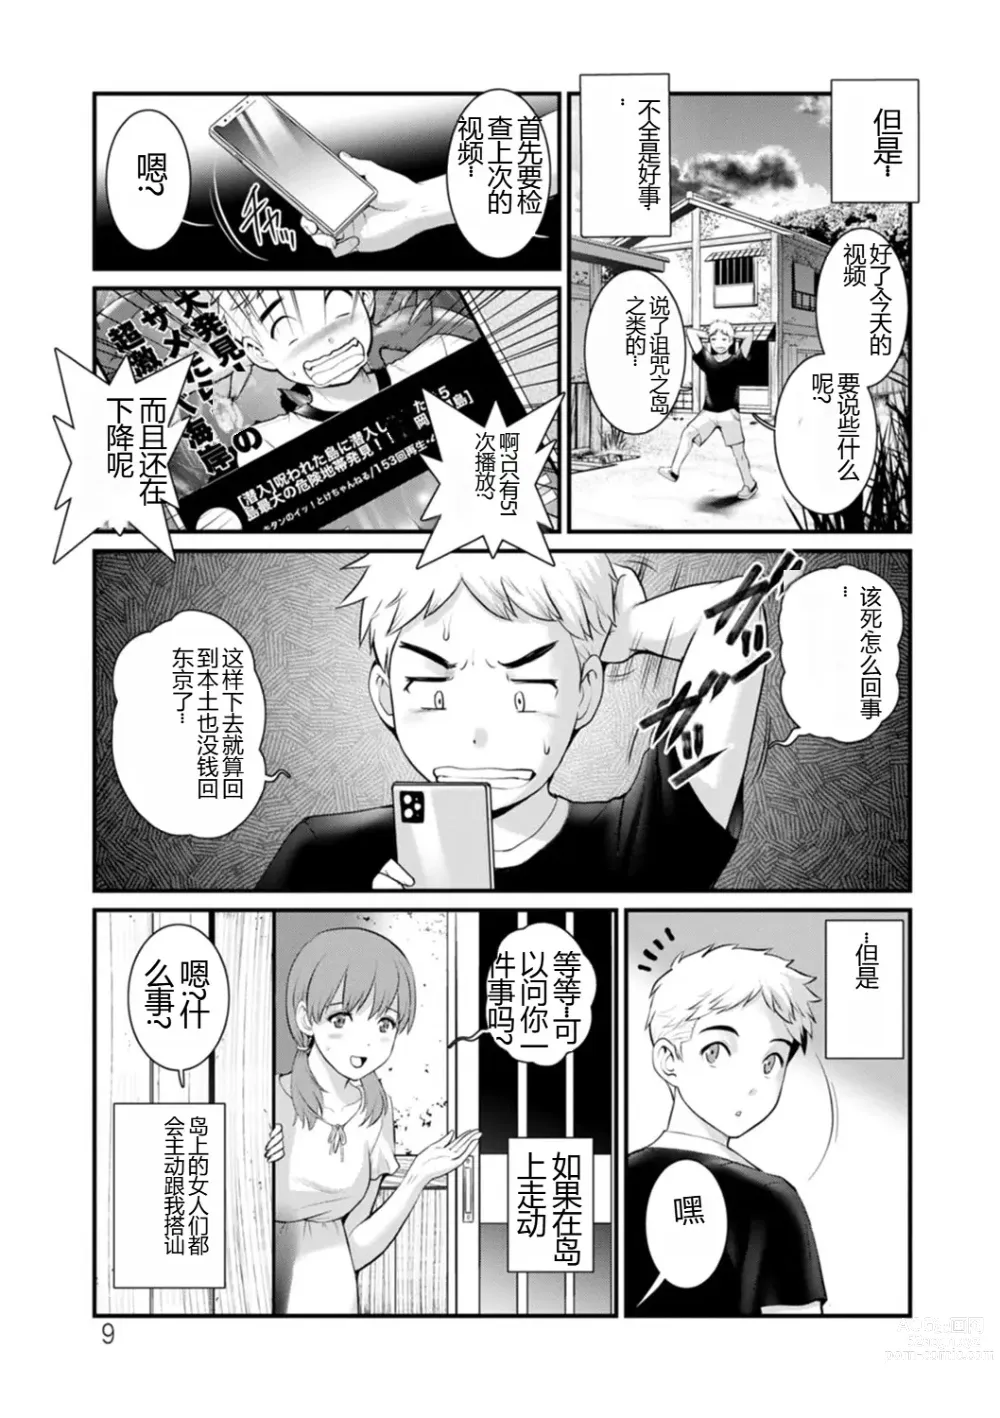 Page 9 of manga Meshibe no Nomikomi yuku Hate ni Meshibe no Sakihokoru Shima de 2